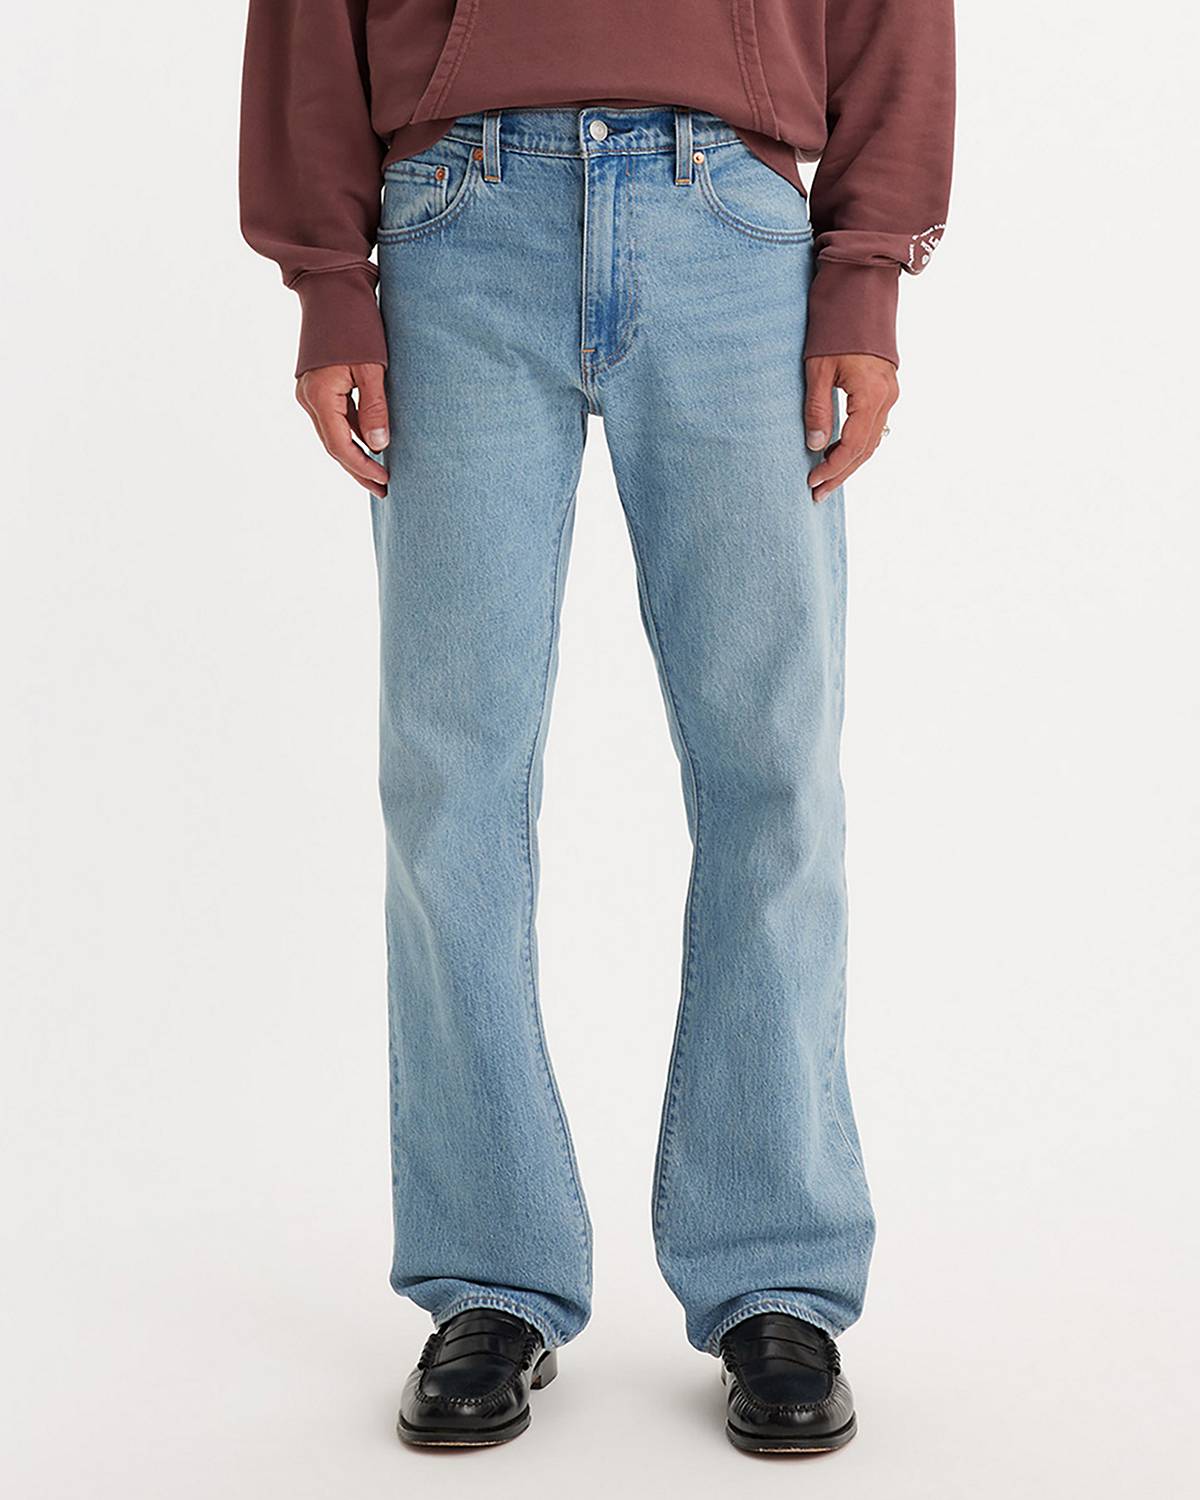 Male model wearing bootcut jeans.